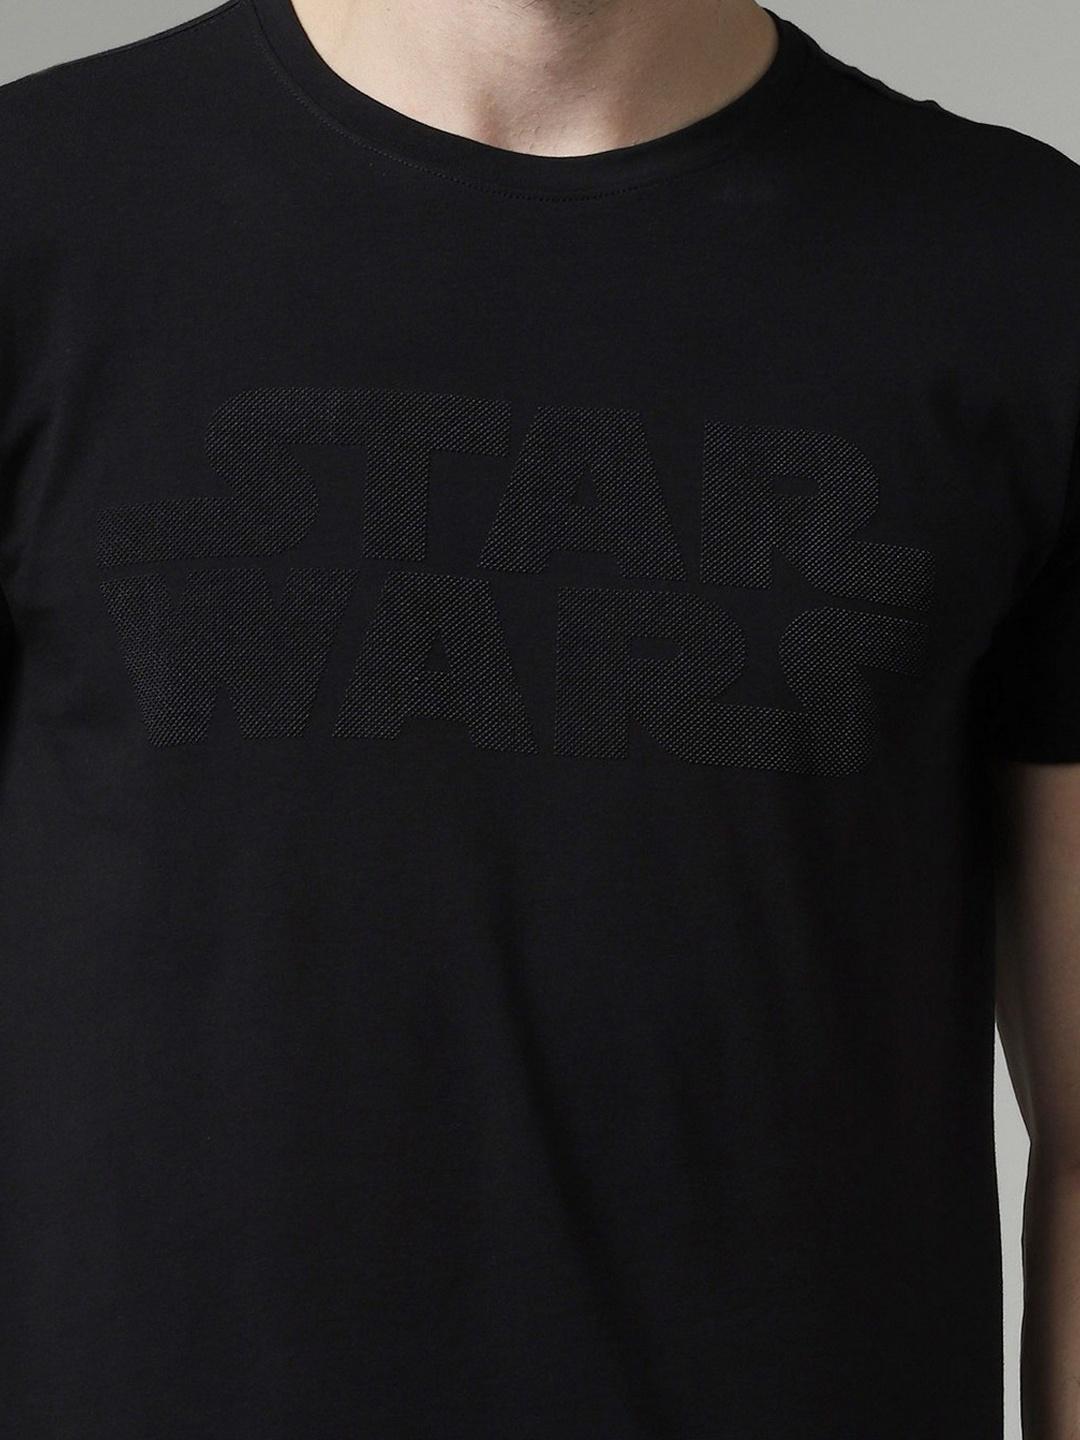 Star Wars Print Slim Fit Crew-Neck T-shirt